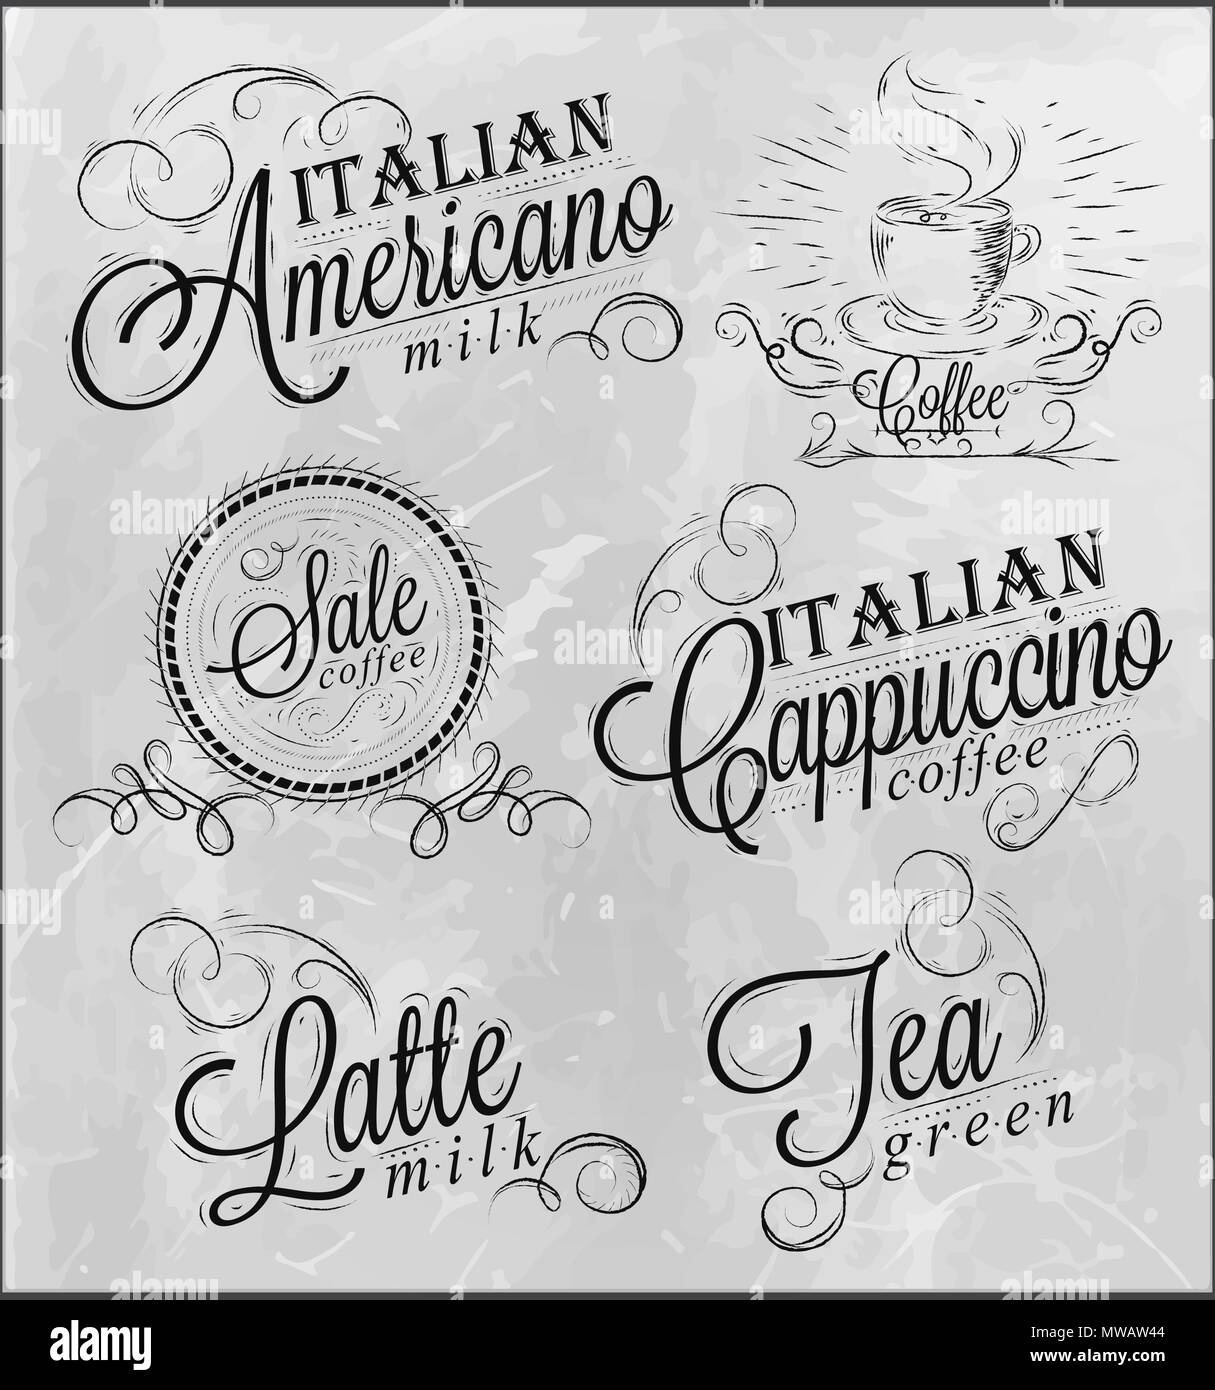 Nomi di bevande di caffè espresso, latte, iscrizioni stilizzata in carbone su una lavagna Illustrazione Vettoriale